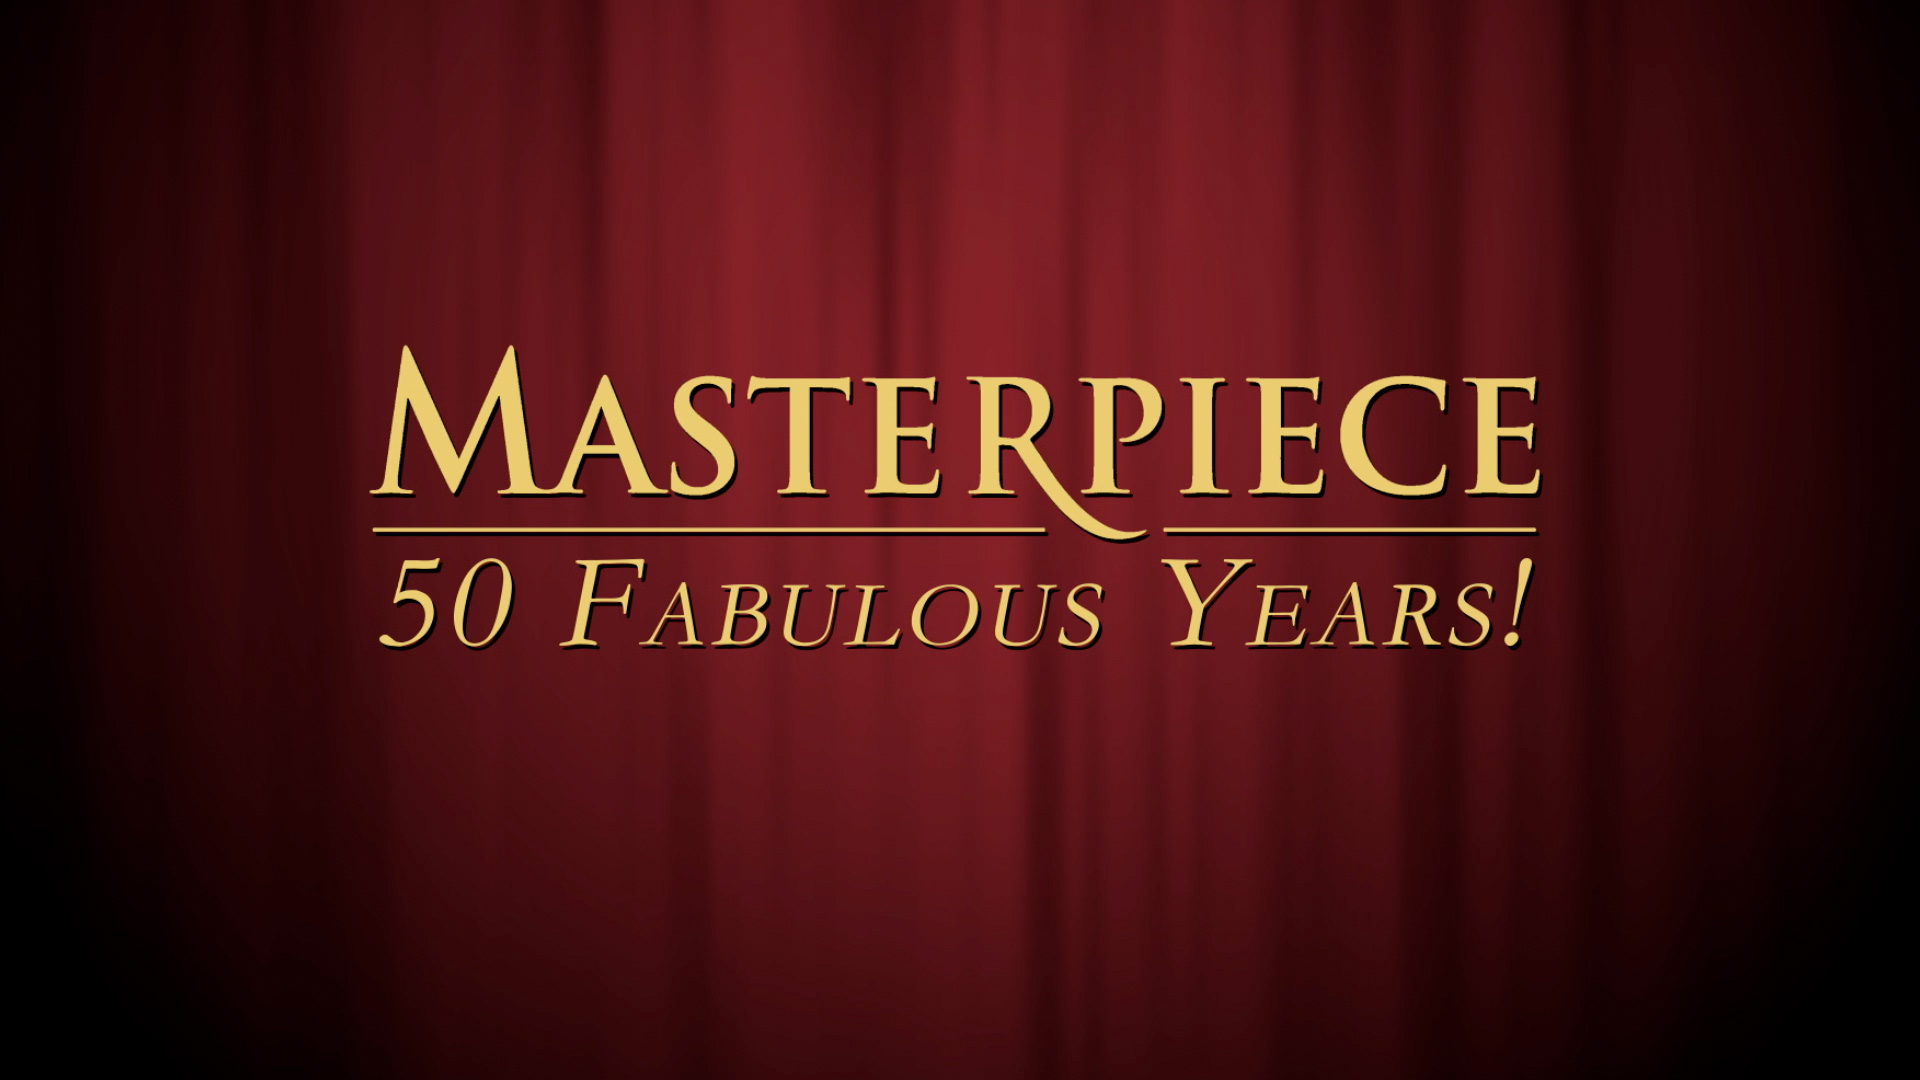 Celebrating 50 Fabulous Years of Masterpiece 